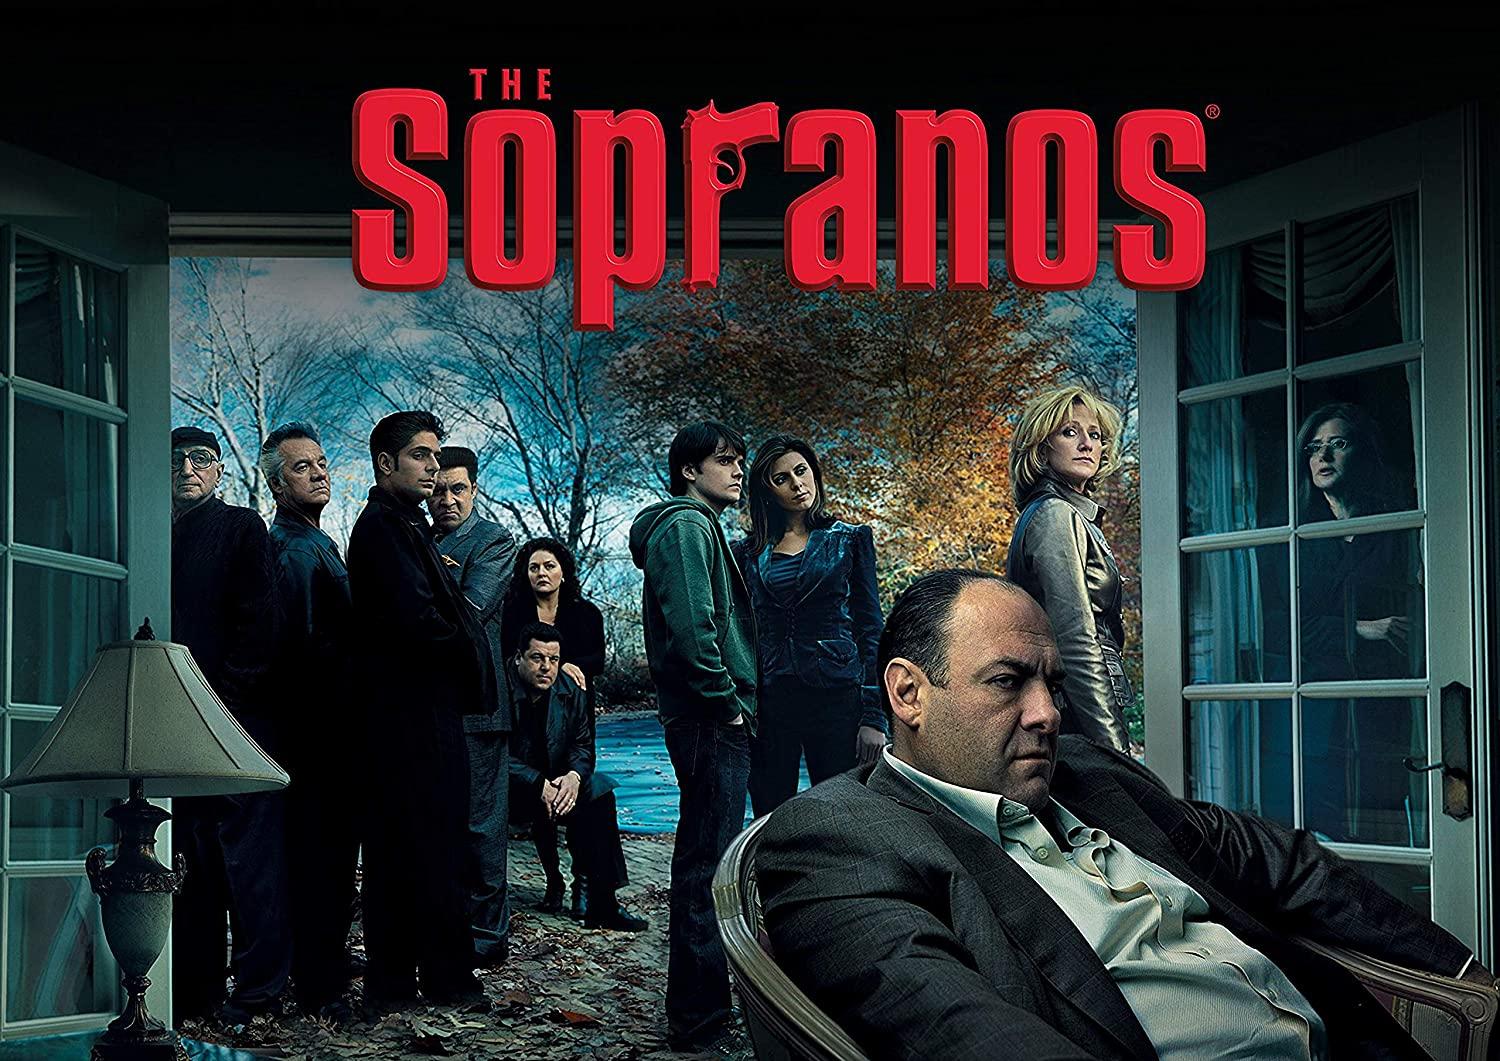 The Sopranos là một trong những series phim hay nhất trong lịch sử truyền hình (Anhtr: Internet).